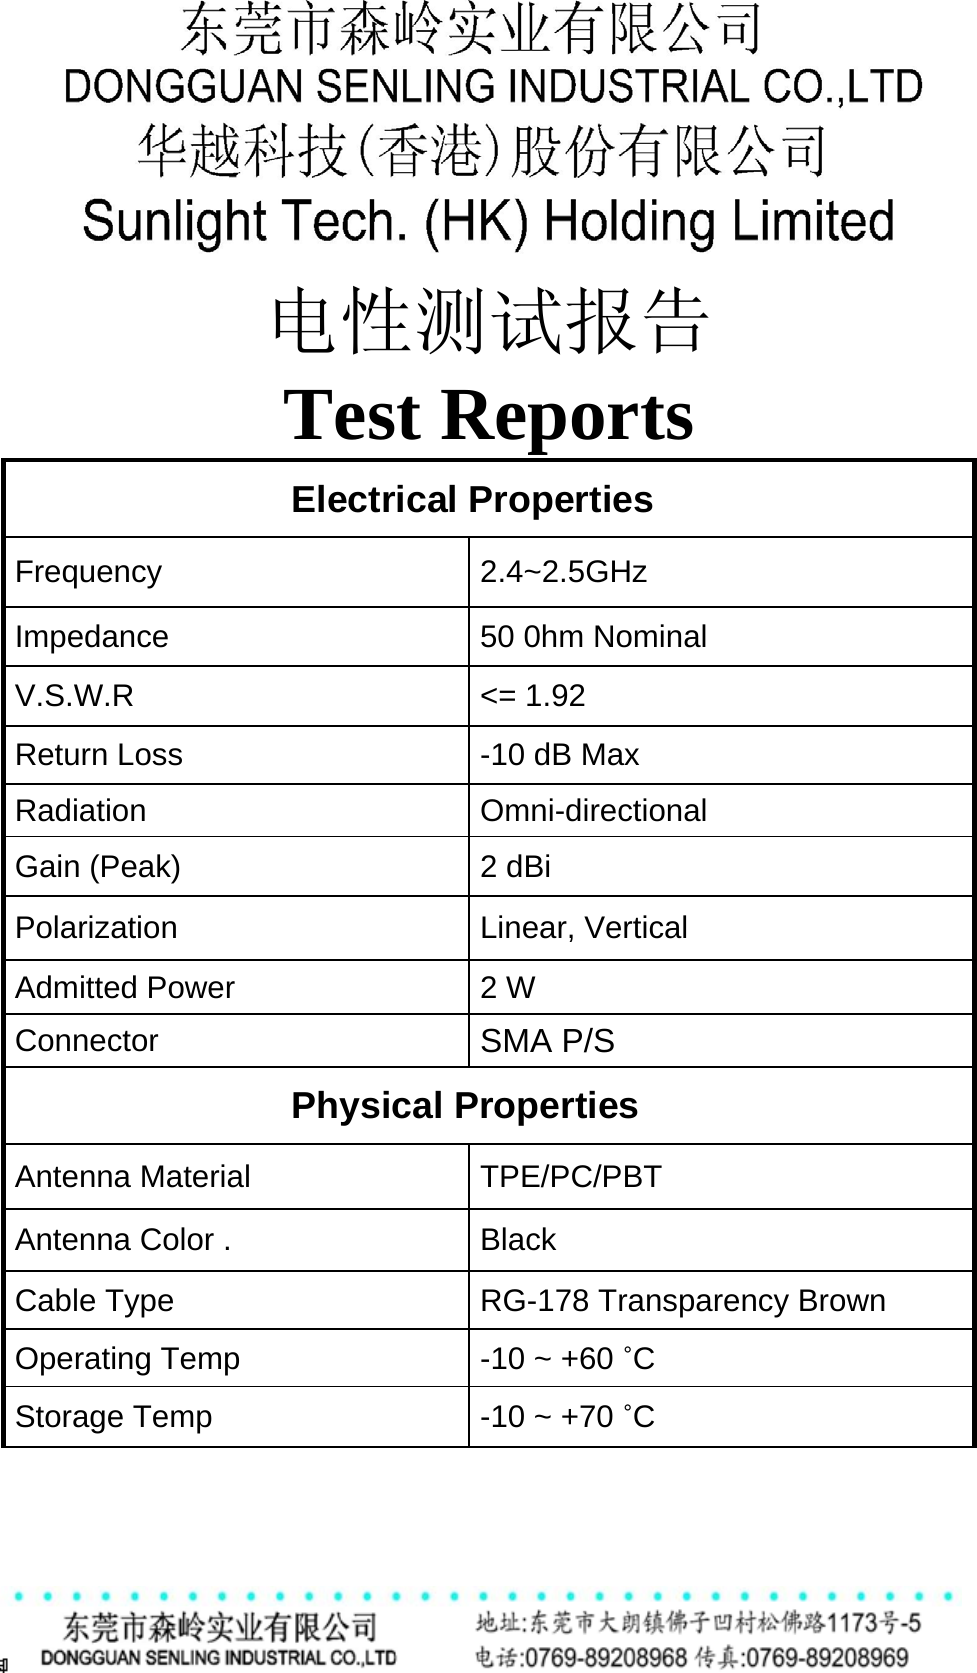        电性测试报告 Test Reports      Electrical Properties   Frequency 2.4~2.5GHz    Impedance 50 0hm Nominal V.S.W.R &lt;= 1.92 Return Loss -10 dB Max Radiation Omni-directional Gain (Peak) 2 dBi Polarization Linear, Vertical Admitted Power 2 W Connector SMA P/S  Physical Properties   Antenna Material    TPE/PC/PBT Antenna Color .   Black Cable Type RG-178 Transparency Brown Operating Temp -10 ~ +60 ˚C Storage Temp -10 ~ +70 ˚C 